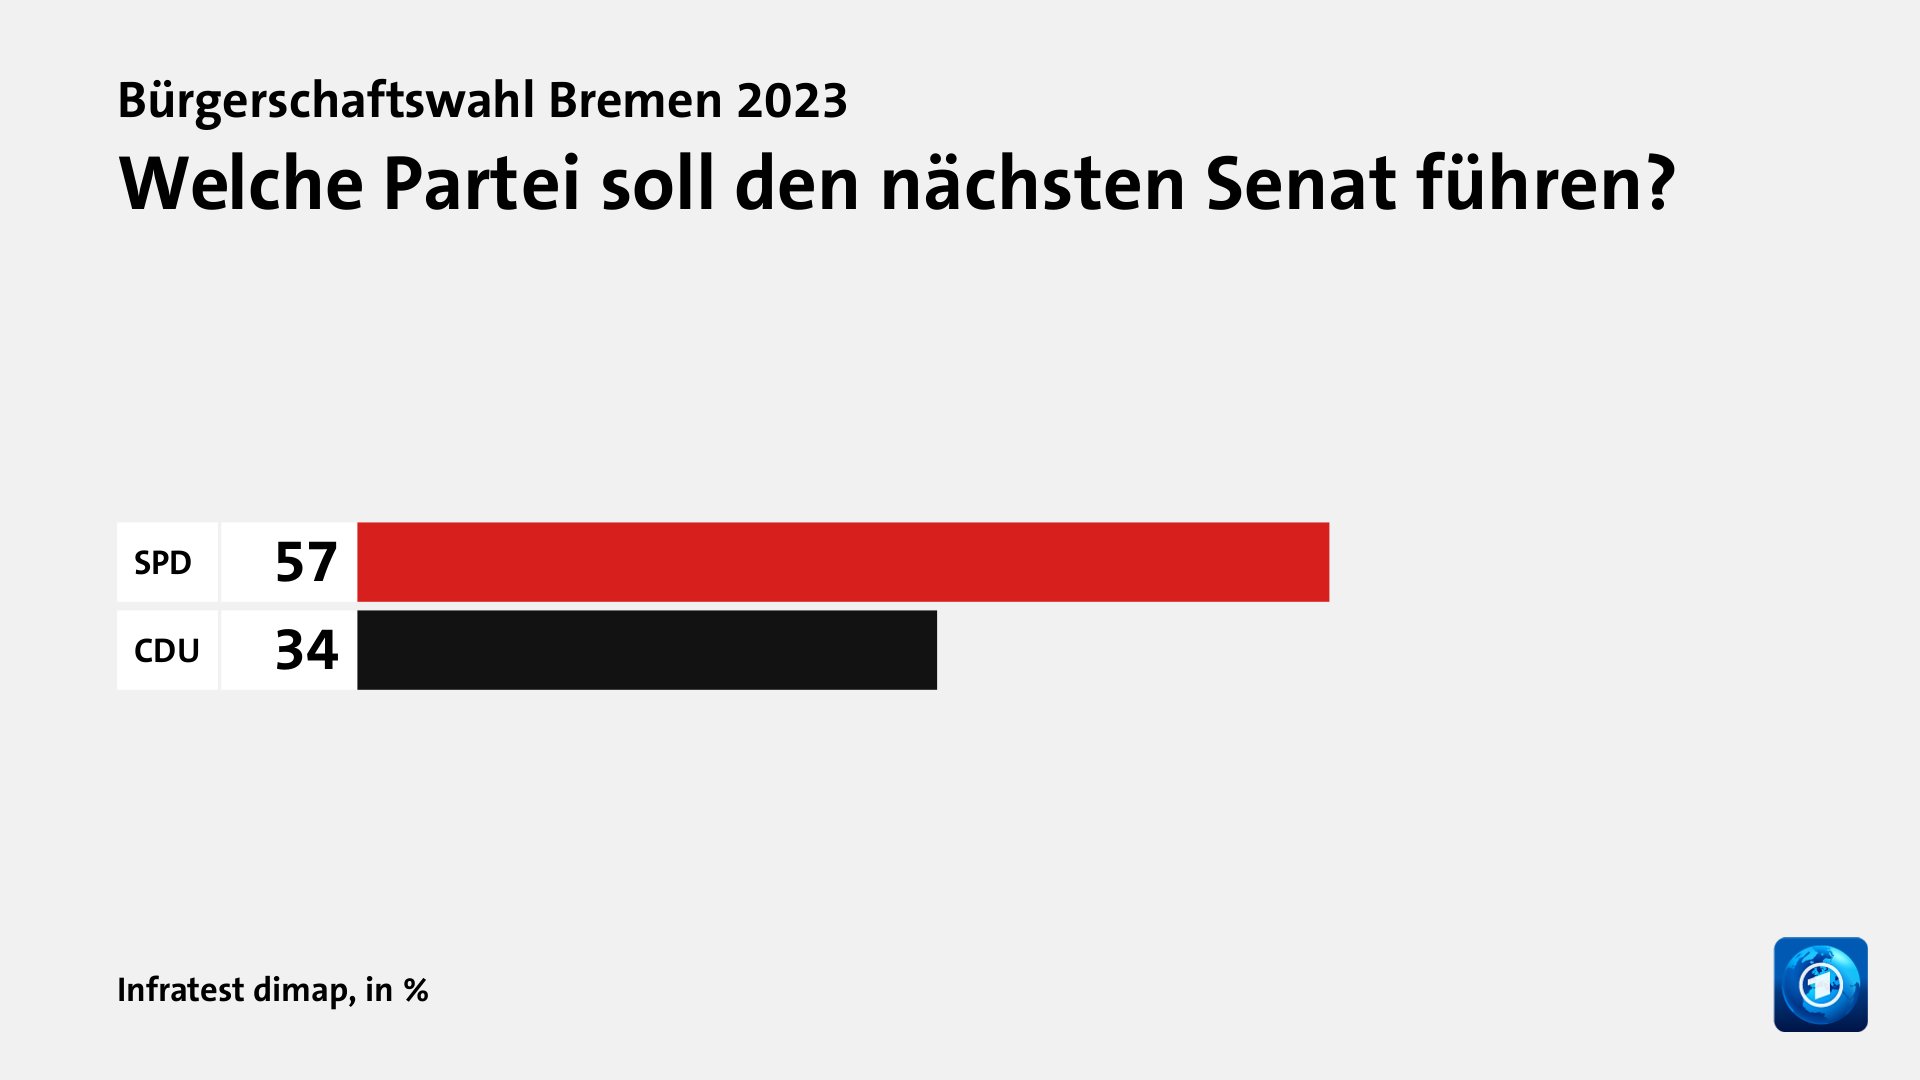 Welche Partei soll den nächsten Senat führen?, in %: SPD 57, CDU 34, Quelle: Infratest dimap